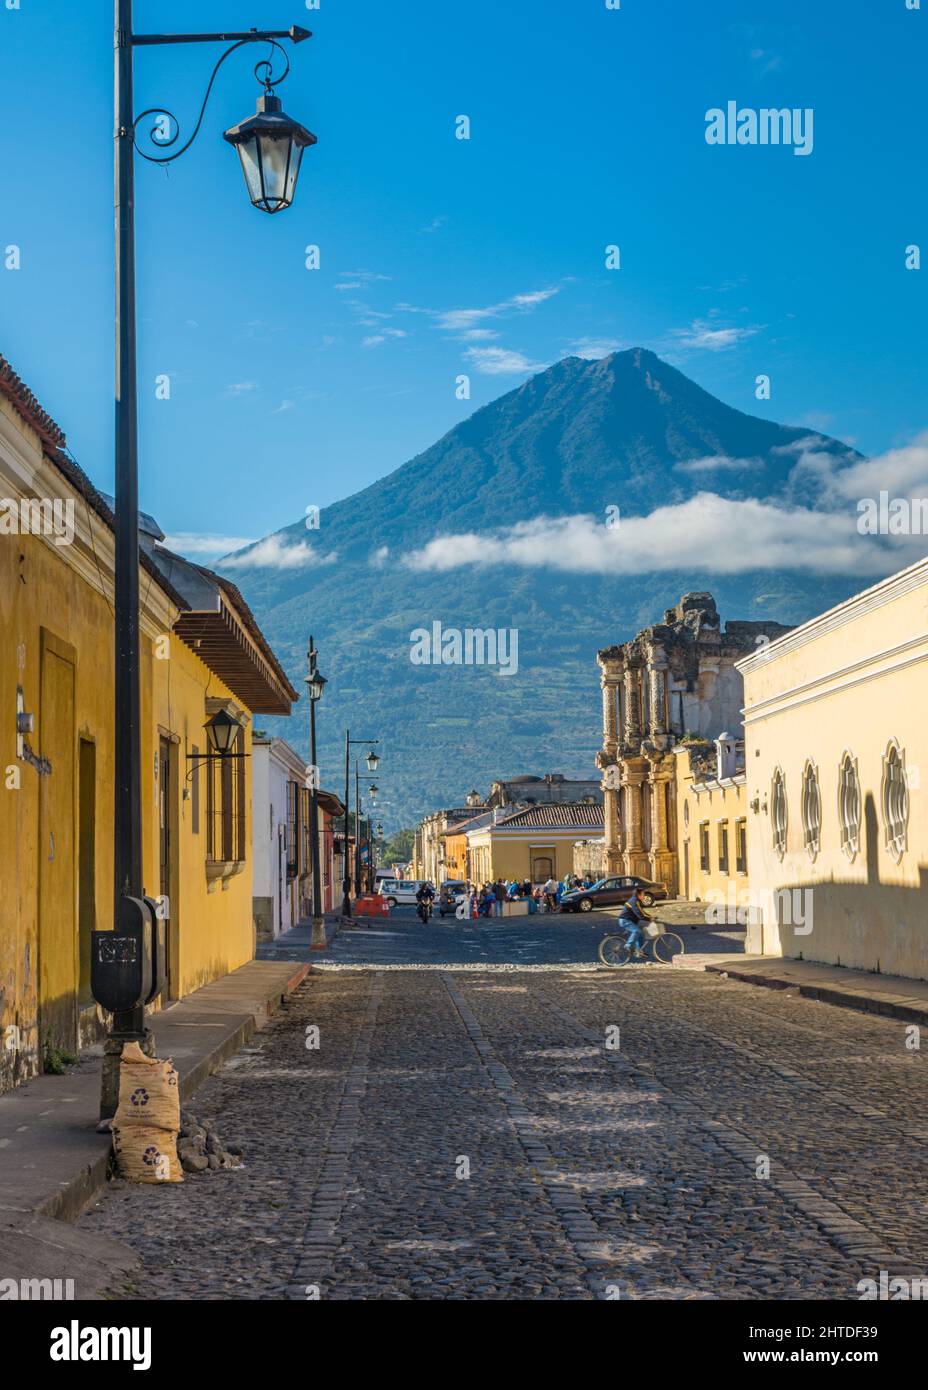 Eine Antigua Guatemala-Straße mit ihren Gebäuden im Kolonialstil und dem Vulkan Agua in der Ferne, Guatemala Stockfoto